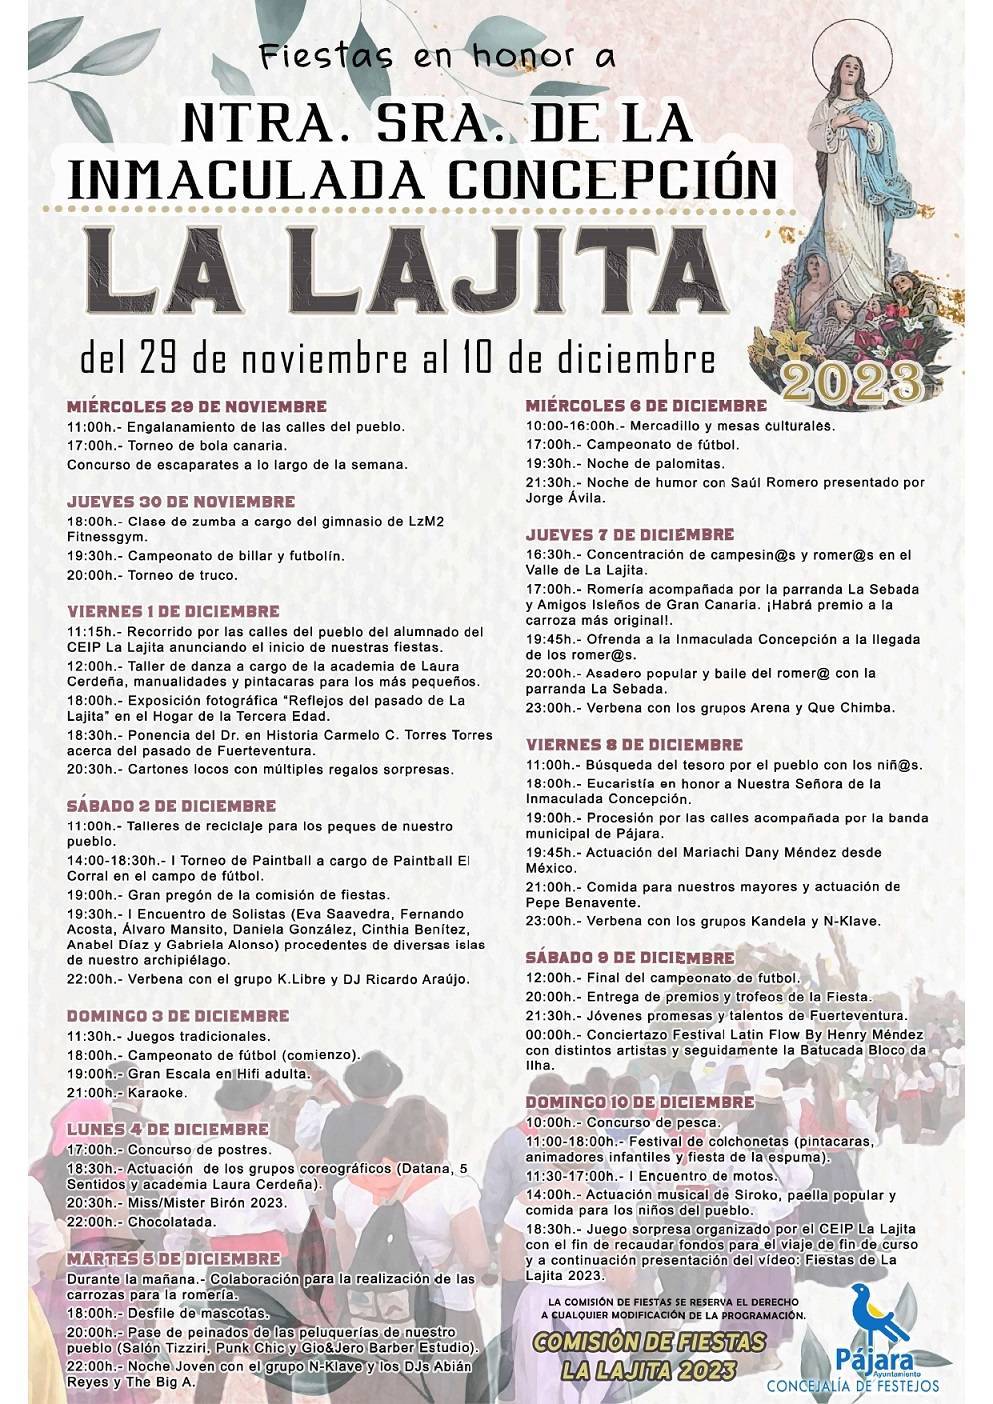 Fiestas en honor a Nuestra Señora de la Inmaculada Concepción (2023) - La Lajita (Las Palmas)